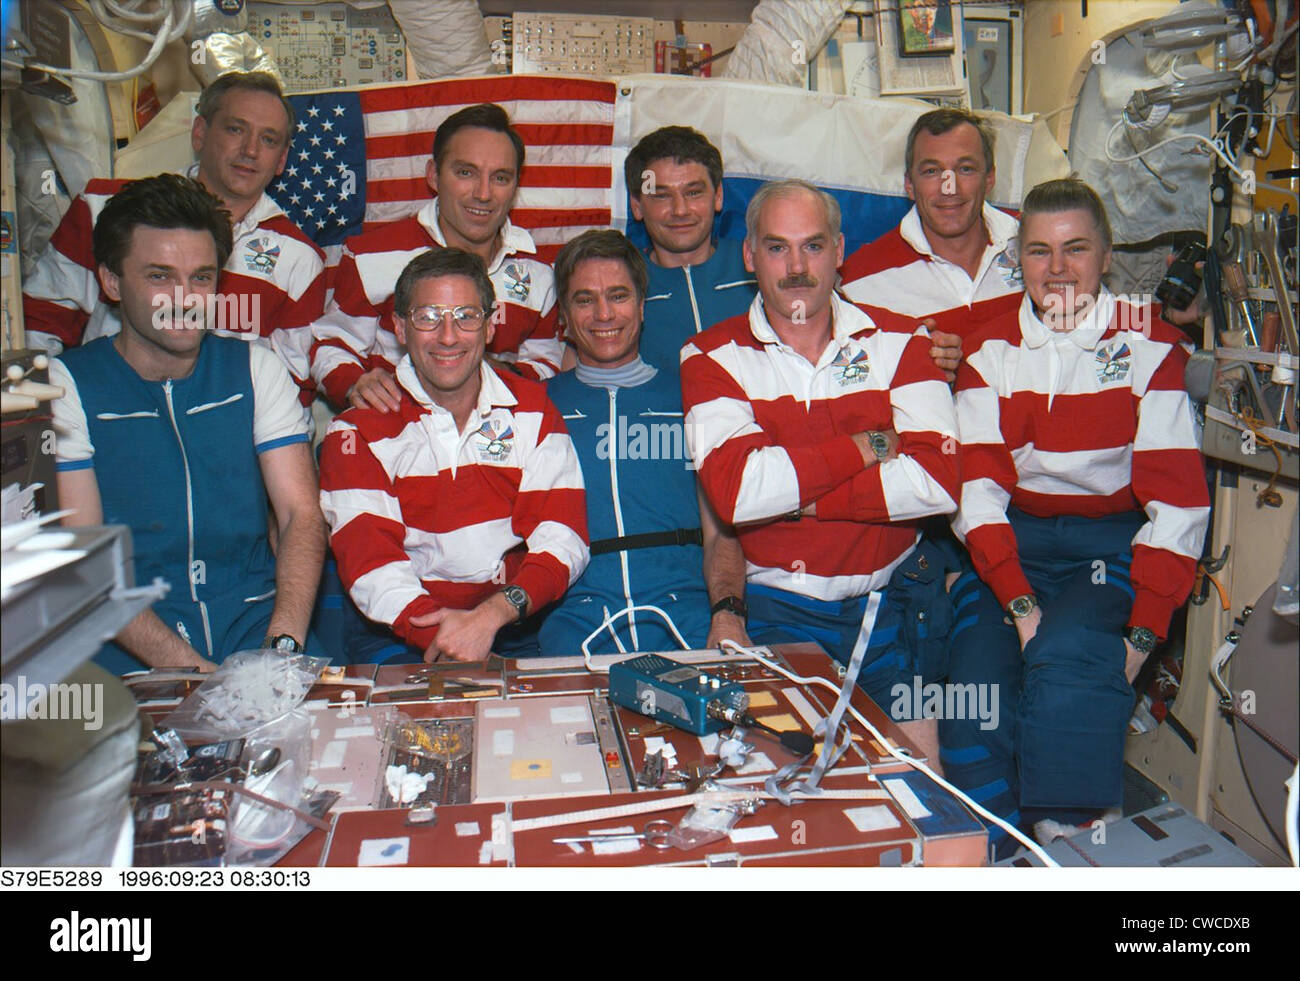 Astronauten und Kosmonauten an Bord der russischen Weltraumstation. Russen sind blau, und die Amerikaner tragen rote Streifen tragen. Stockfoto